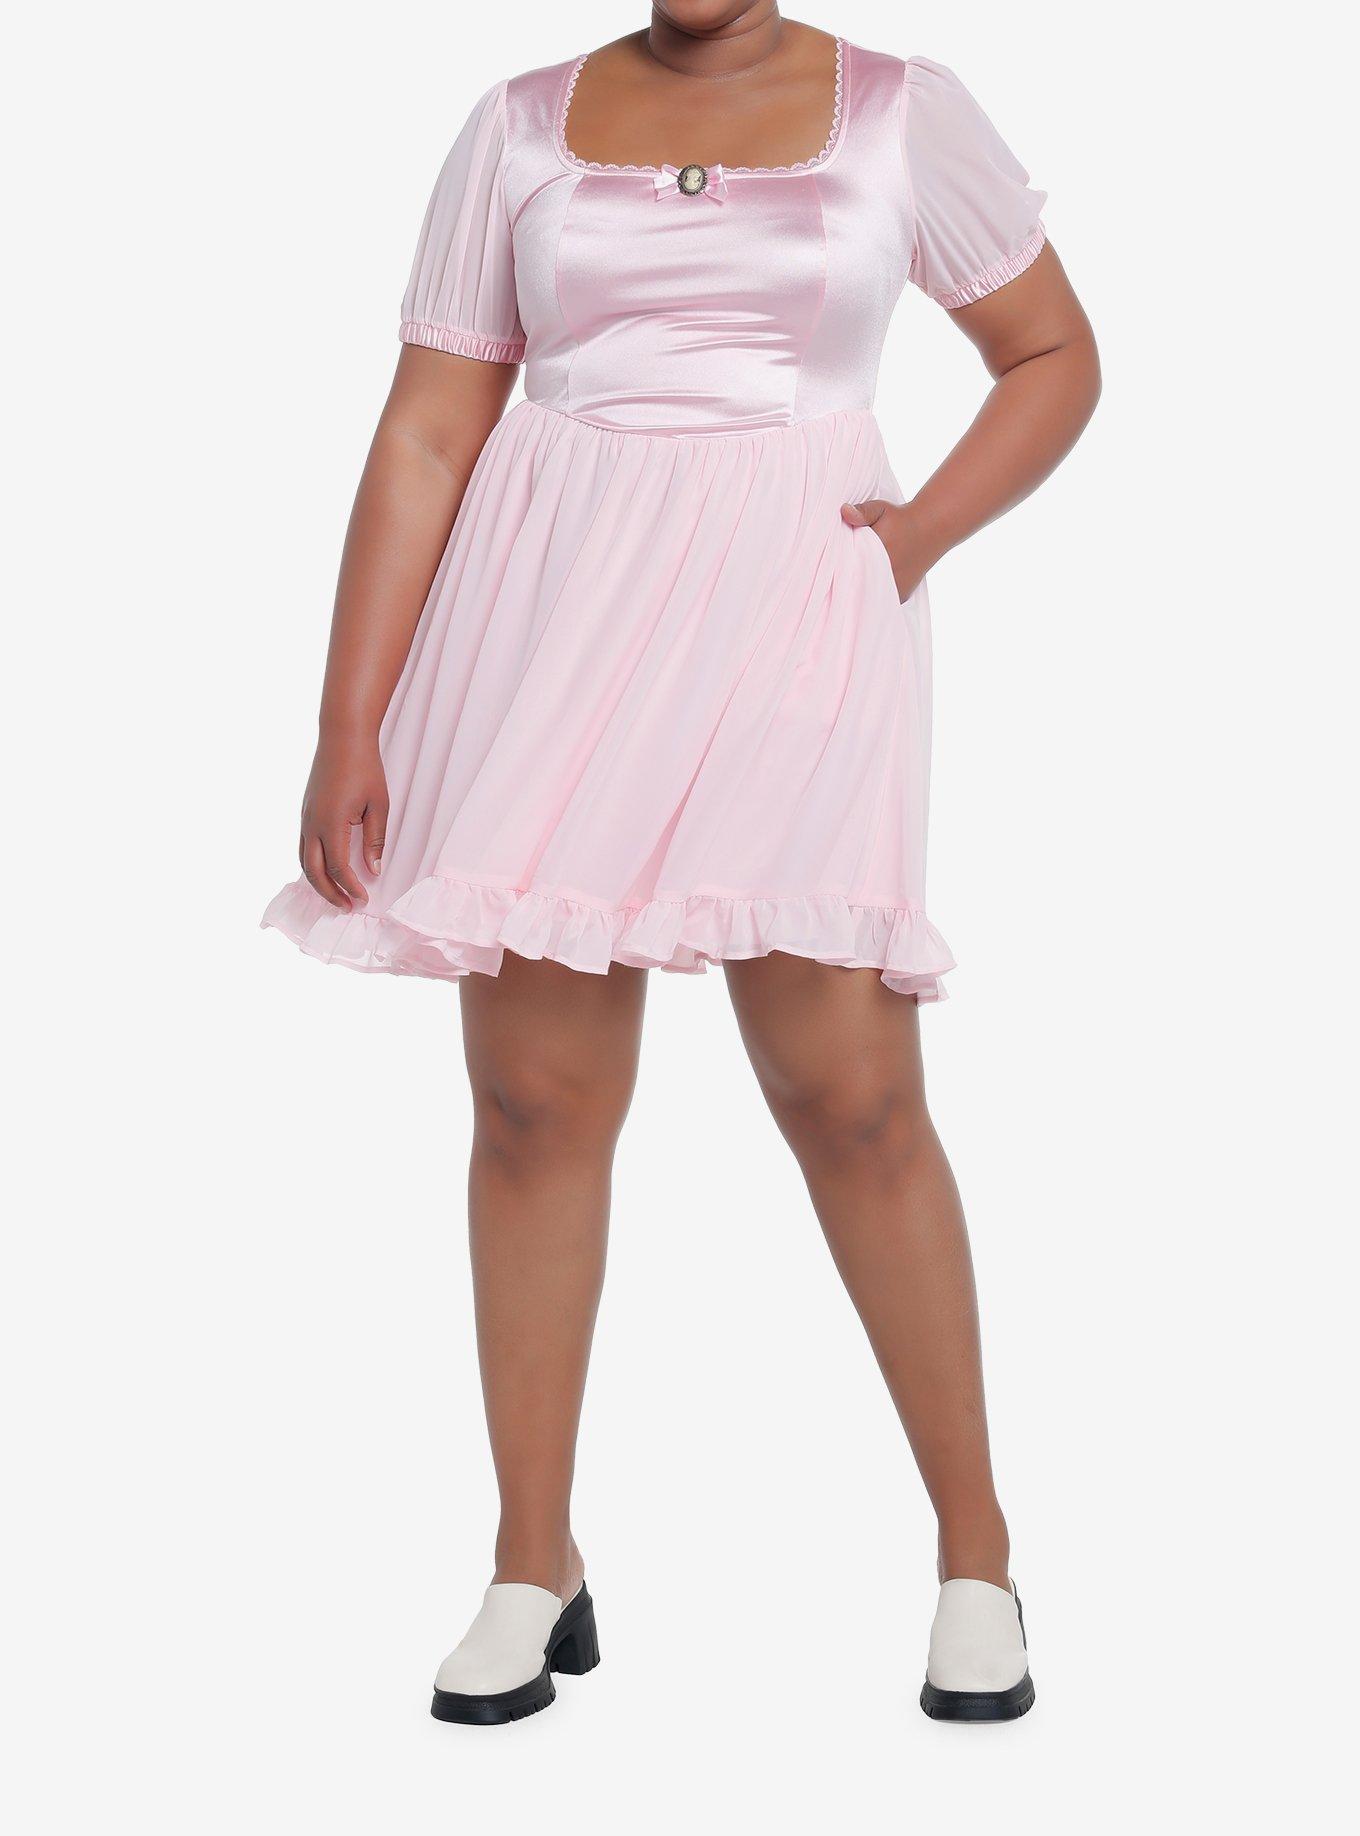 Sweet Society Pink Cameo Chiffon Dress Plus Size, PINK, alternate